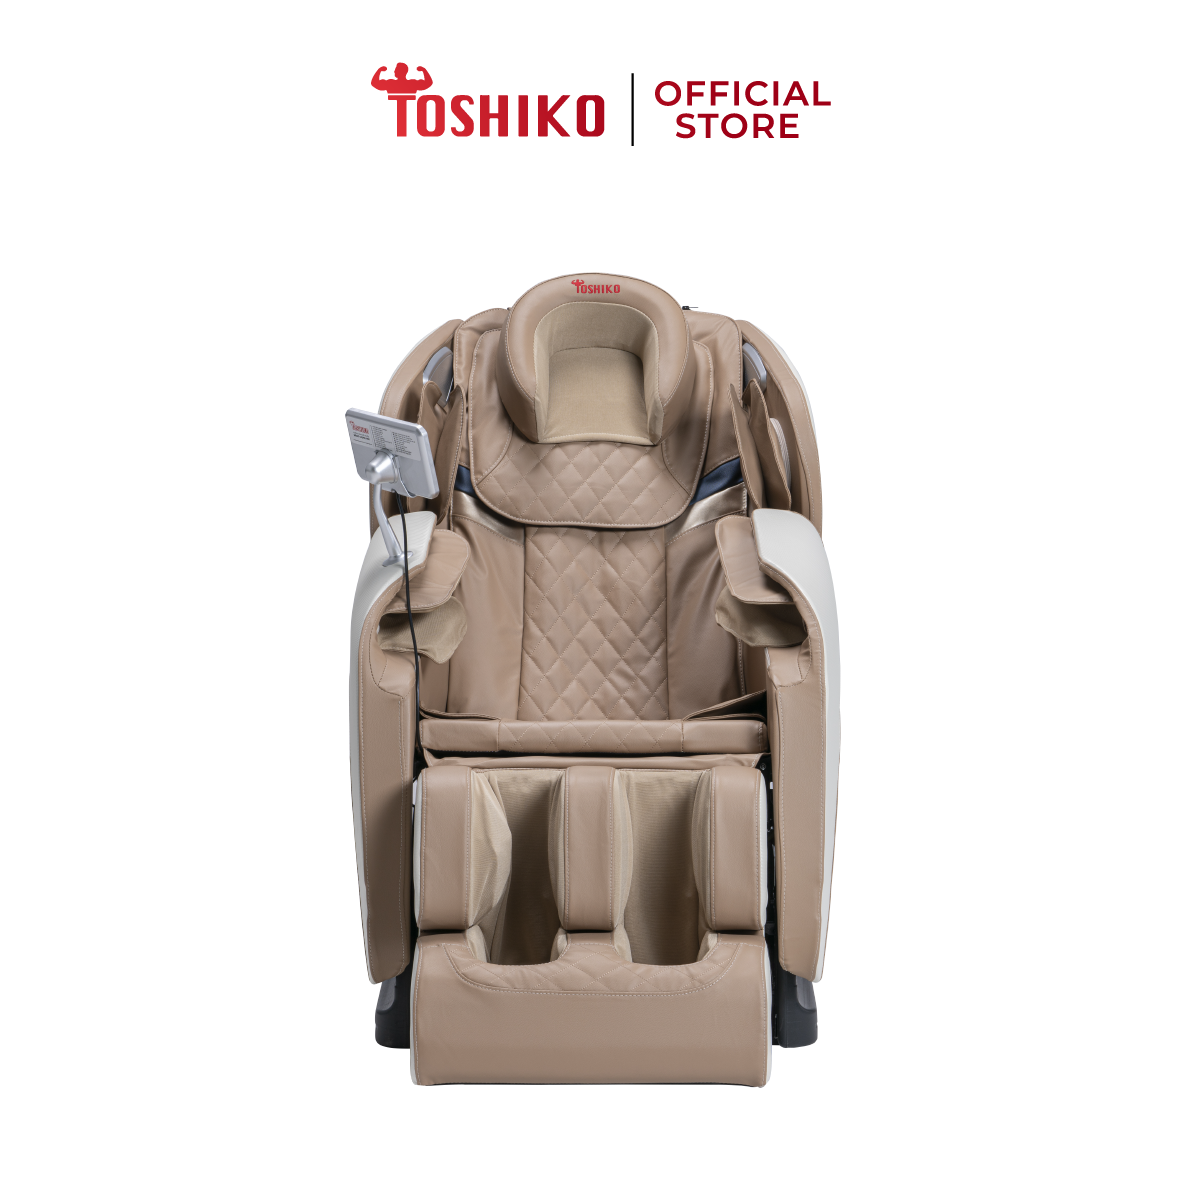 [TRẢ GÓP 0%] Ghế massage toàn thân tiêu chuẩn Nhật Bản Toshiko T21 - ghế massage có chức năng massage...